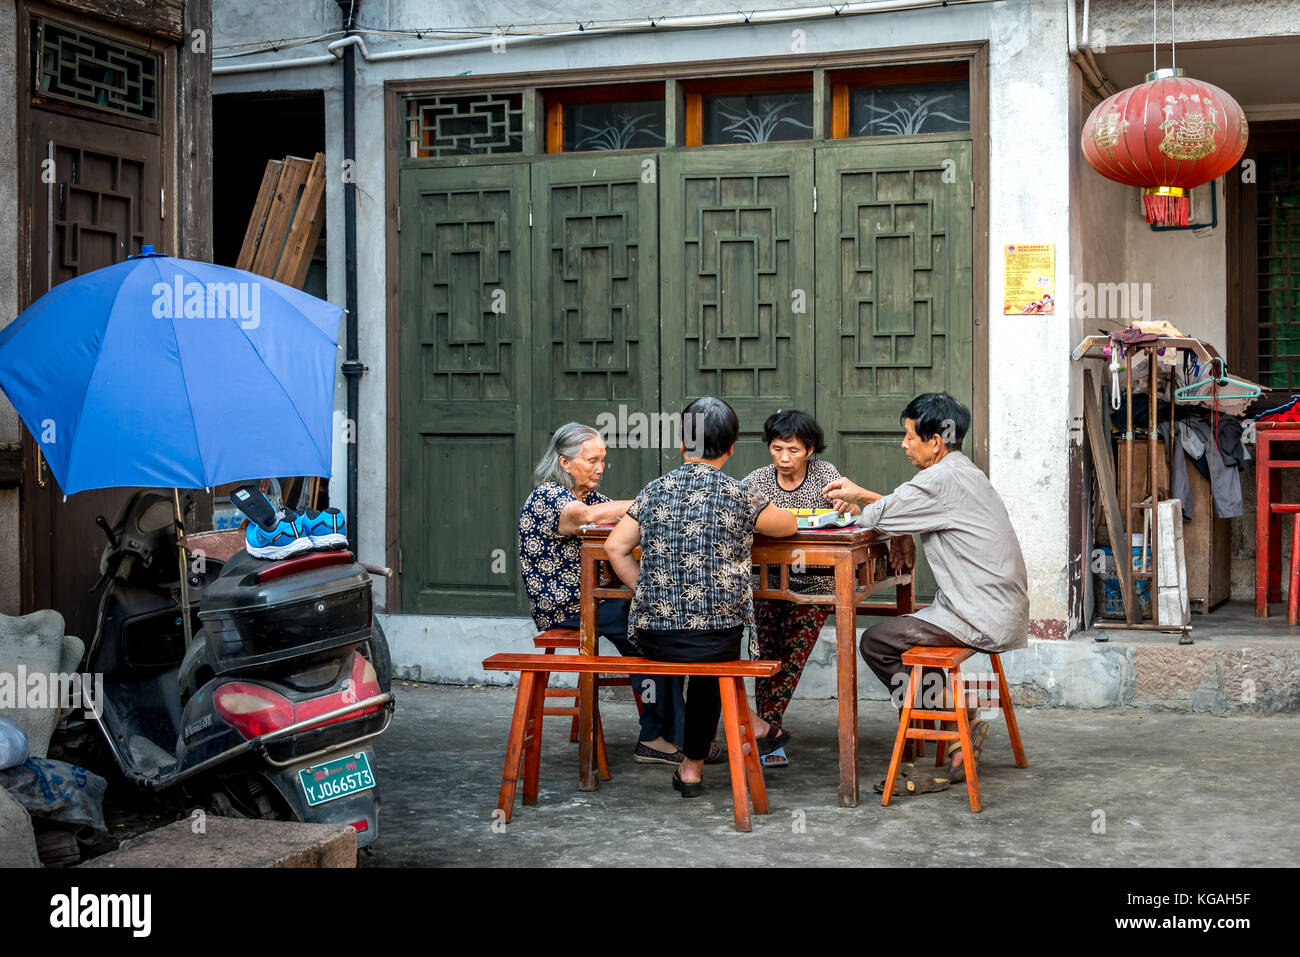 Los cuatro mayores chinos jugar a un juego en una mesa de madera en un callejón en Cangpo antigua aldea, Yongjia condado, provincia de Zhejiang, China, la vida de la aldea Foto de stock